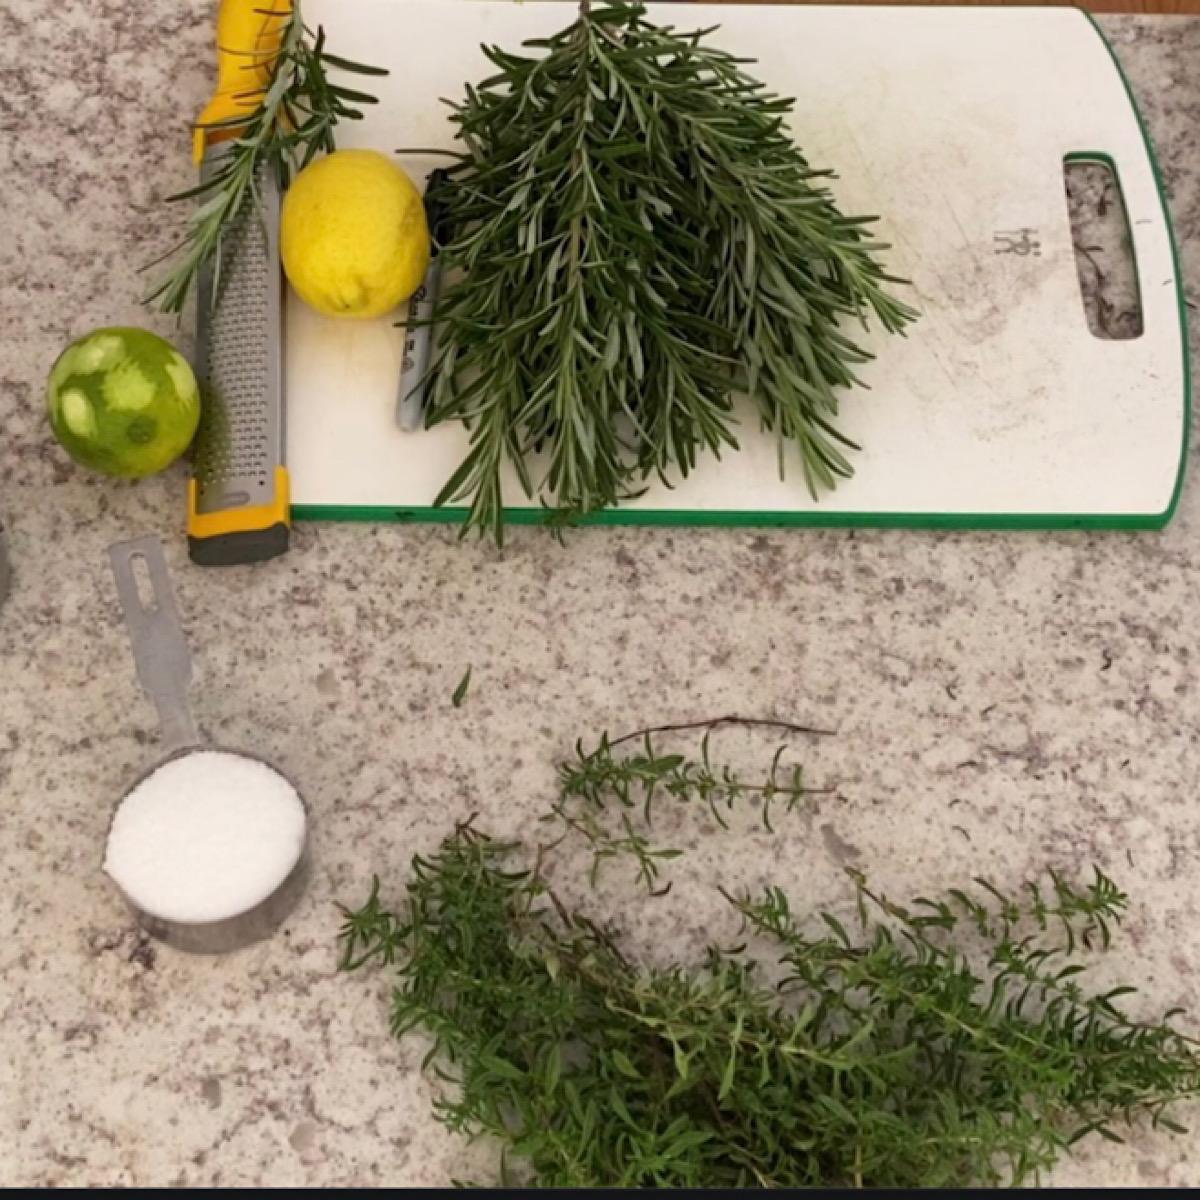 Ingredients for making Mediterranean herbal salt blend